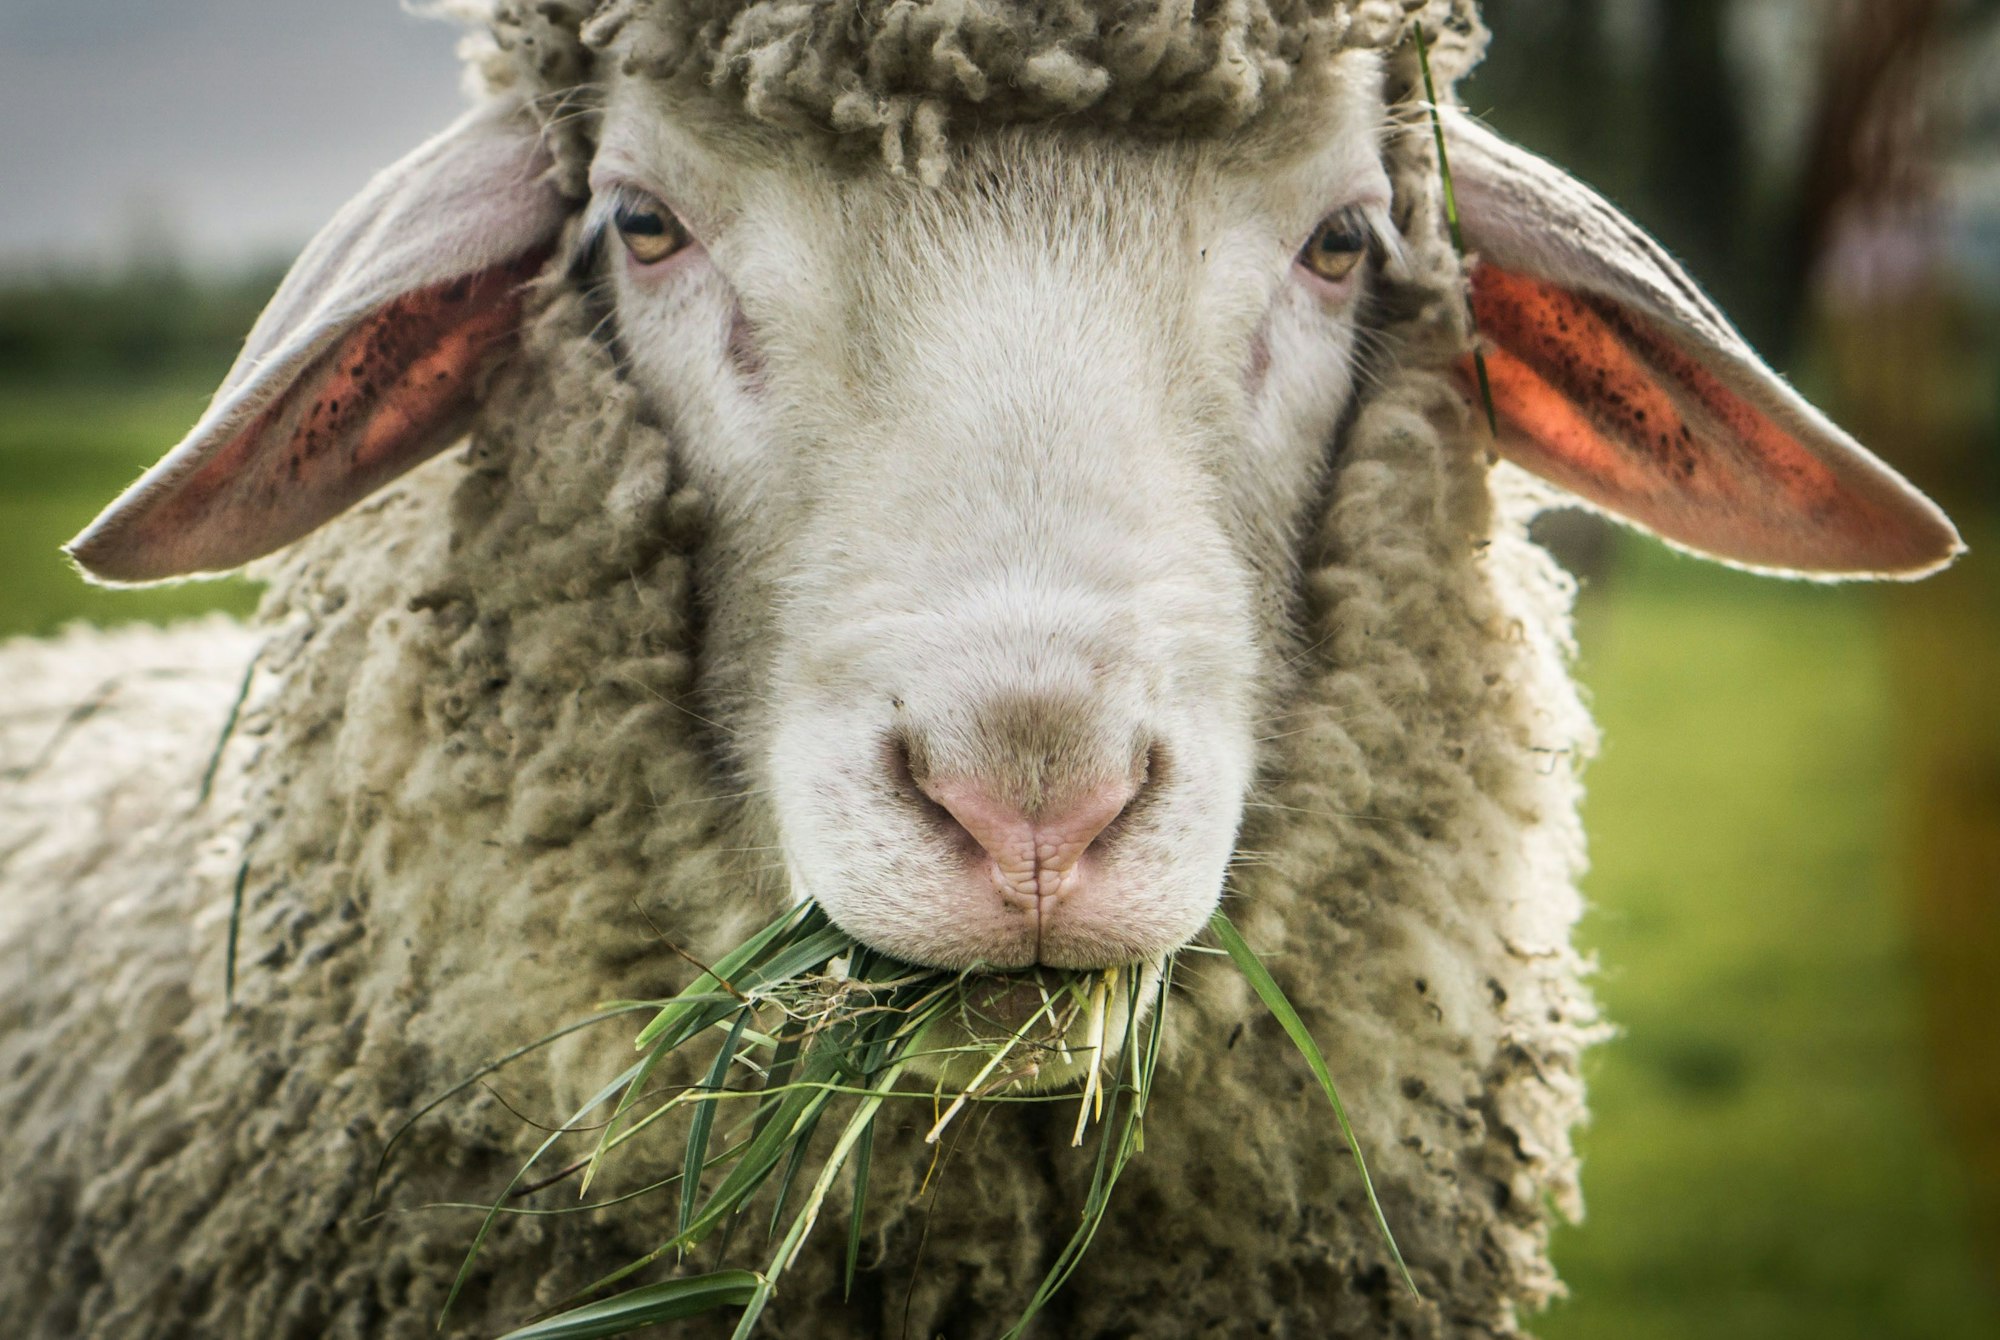 Ein Schaf mit Gras im Maul blickt im April 2016 auf einer Weide in Bingenheim in der Wetterau (Hessen) in die Kamera des Fotografen.